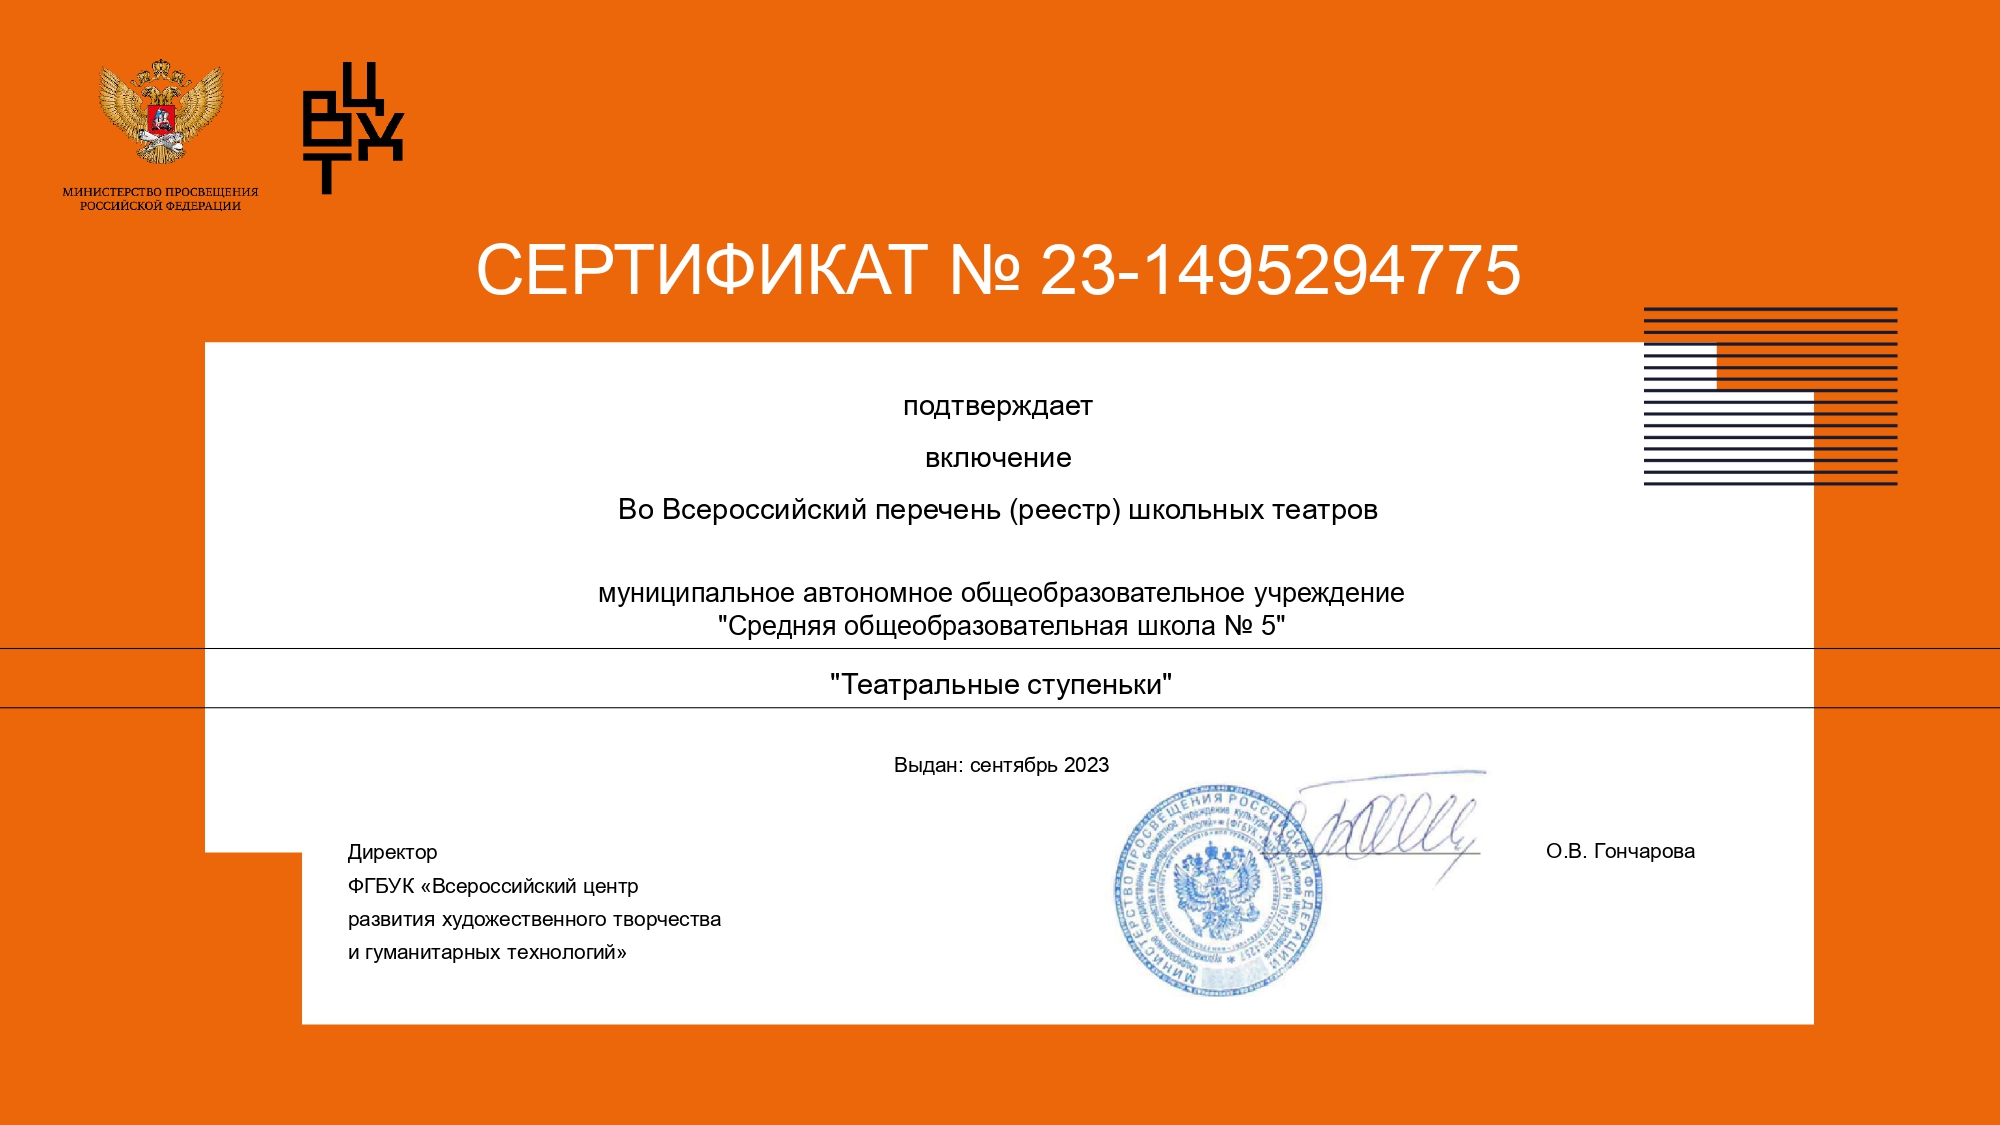 Сертификат 23 1495294775 page 0001